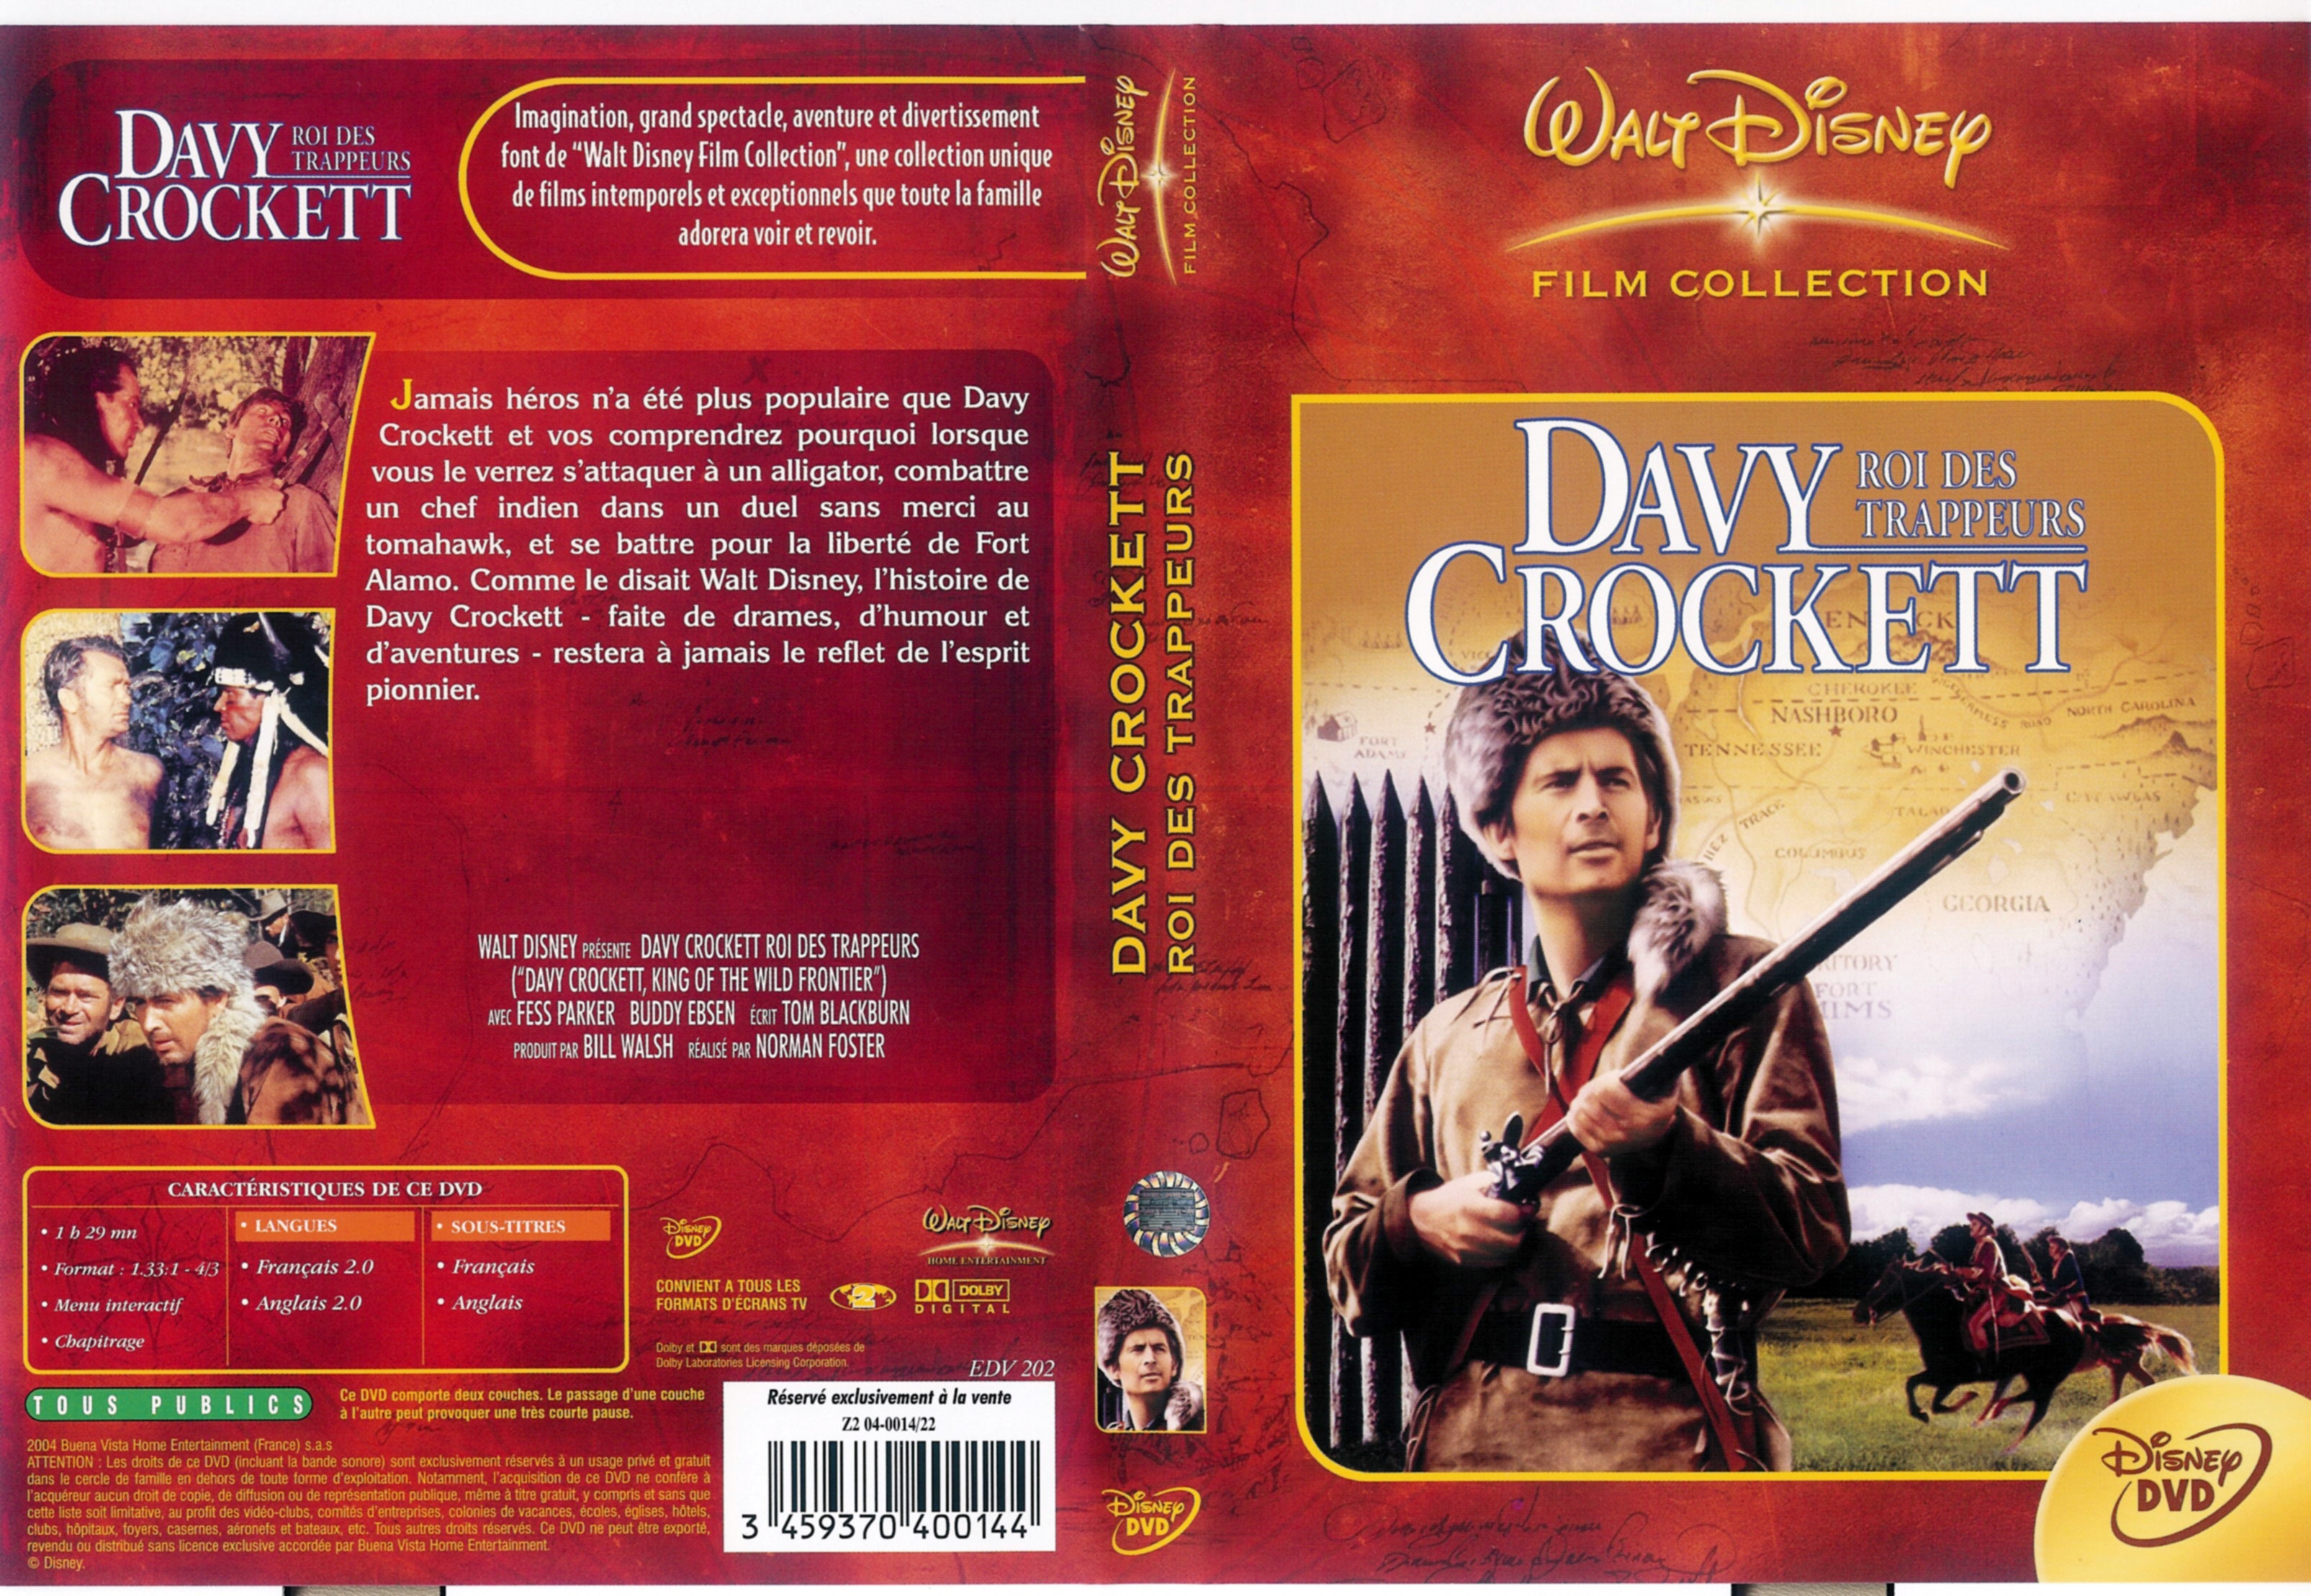 Jaquette DVD Davy Crockett roi des trappeurs